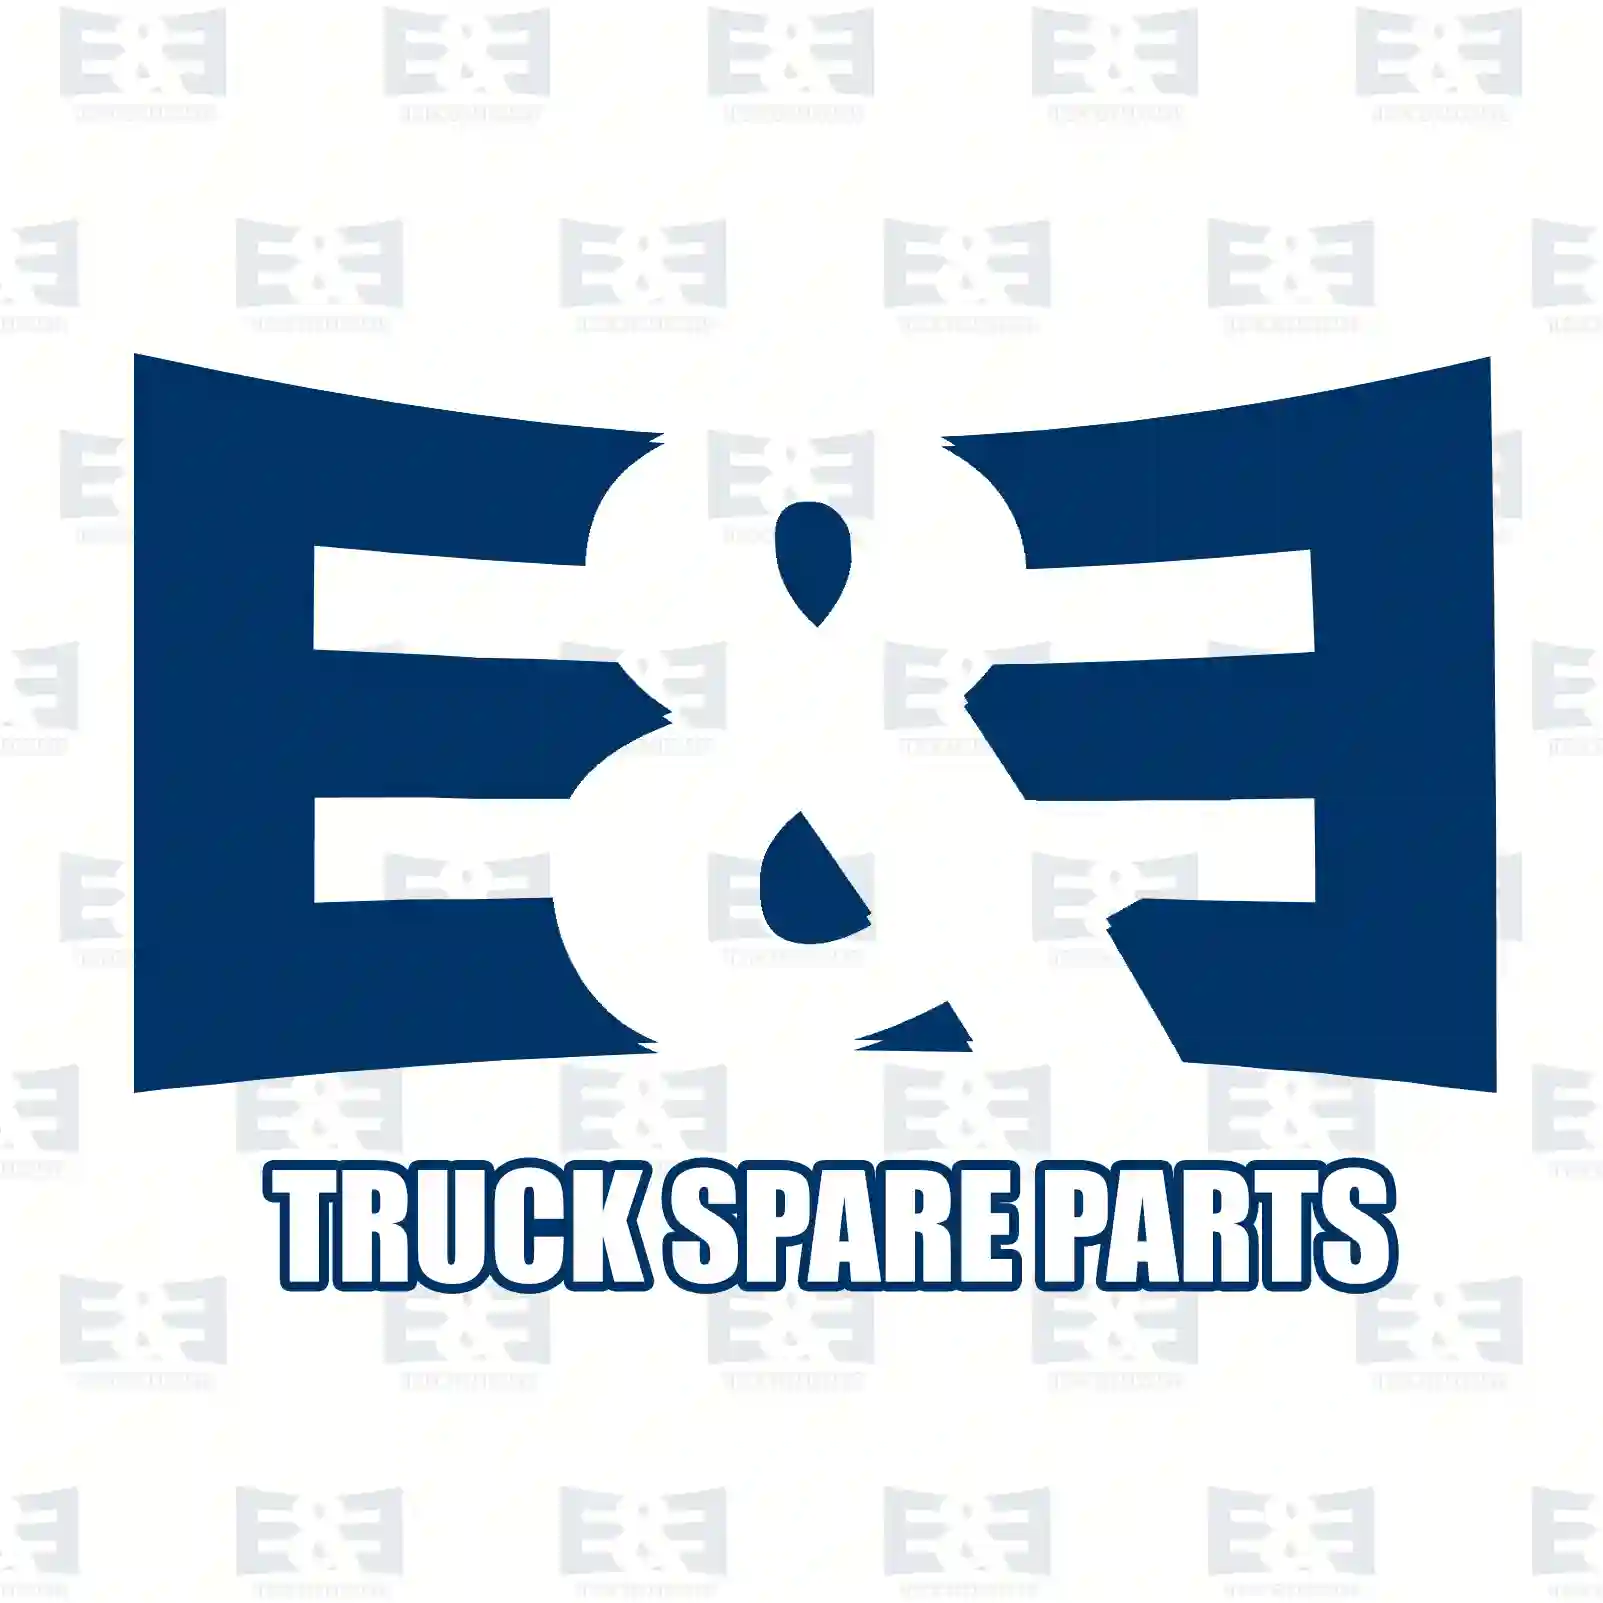 V-belt, 2E2286220, 0067684, 0238670, 1264785, 238670, 67684, 04722565, 04843795, 4722565, 4843795, 98420090, 98456206, 0099975992, 652150, ZG02357-0008 ||  2E2286220 E&E Truck Spare Parts | Truck Spare Parts, Auotomotive Spare Parts V-belt, 2E2286220, 0067684, 0238670, 1264785, 238670, 67684, 04722565, 04843795, 4722565, 4843795, 98420090, 98456206, 0099975992, 652150, ZG02357-0008 ||  2E2286220 E&E Truck Spare Parts | Truck Spare Parts, Auotomotive Spare Parts